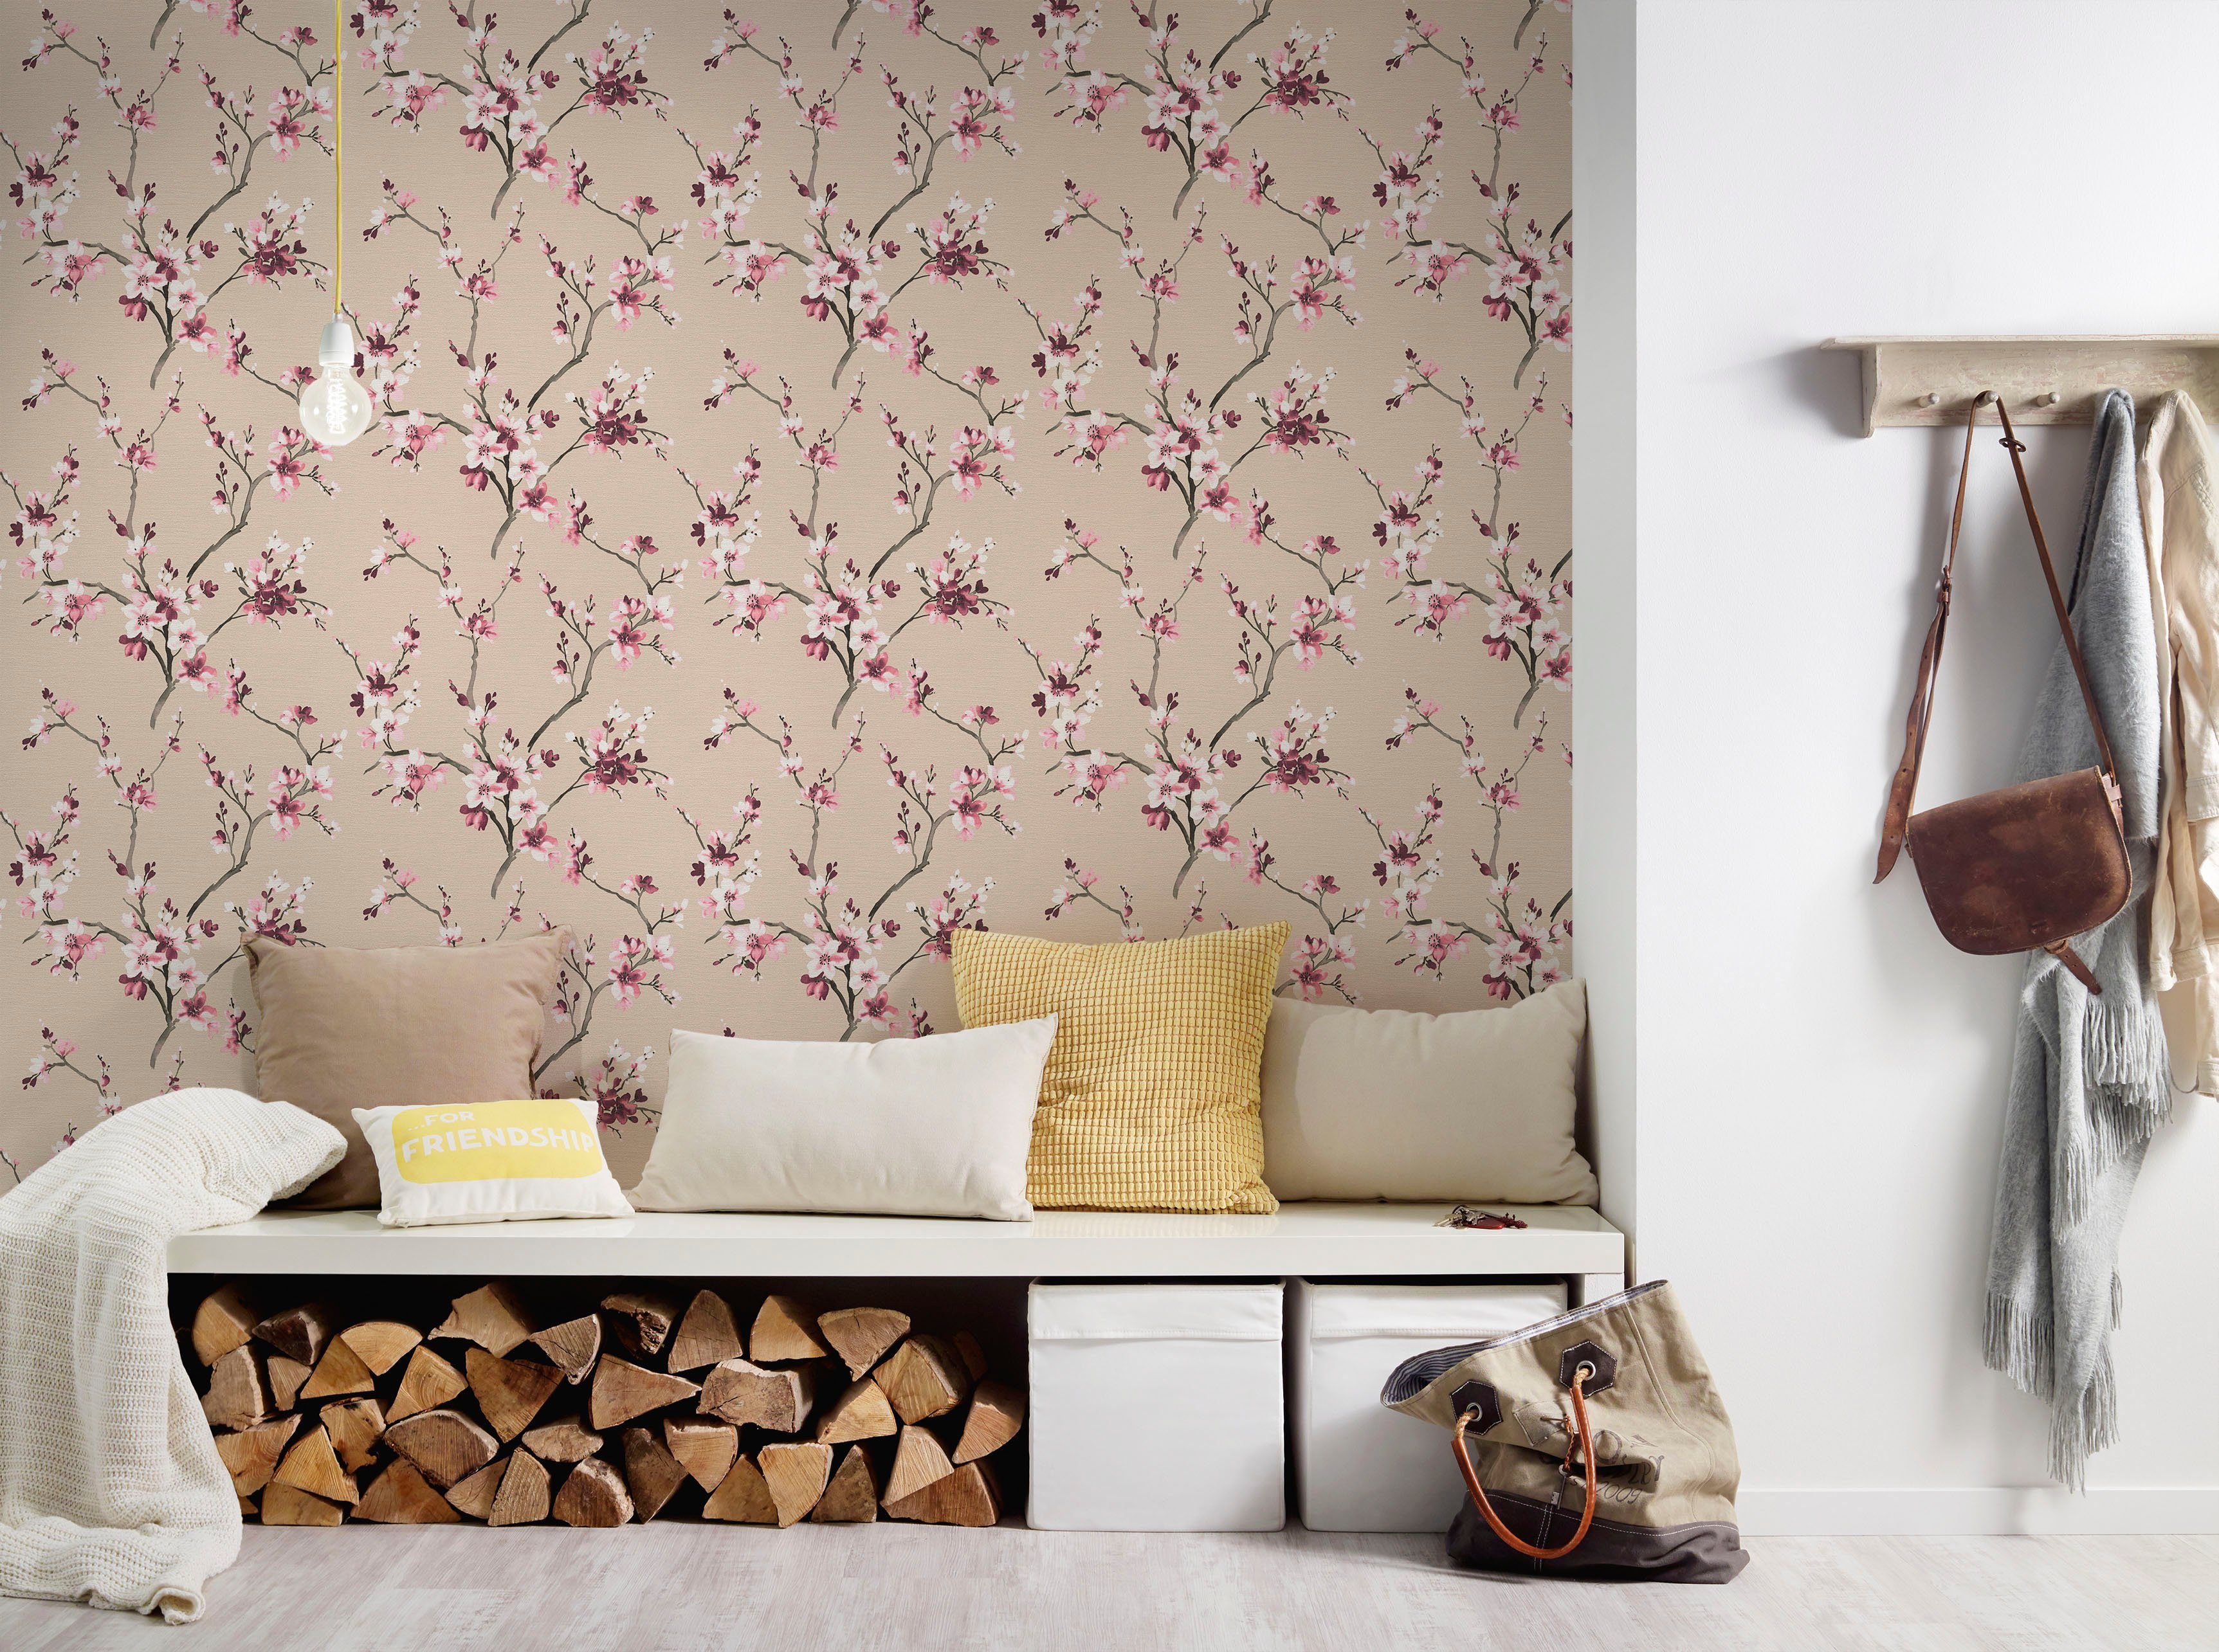 Lodge, Vliestapete floral, Tapete geblümt, living Blumenoptik Desert walls rosa/beige strukturiert, natürlich,